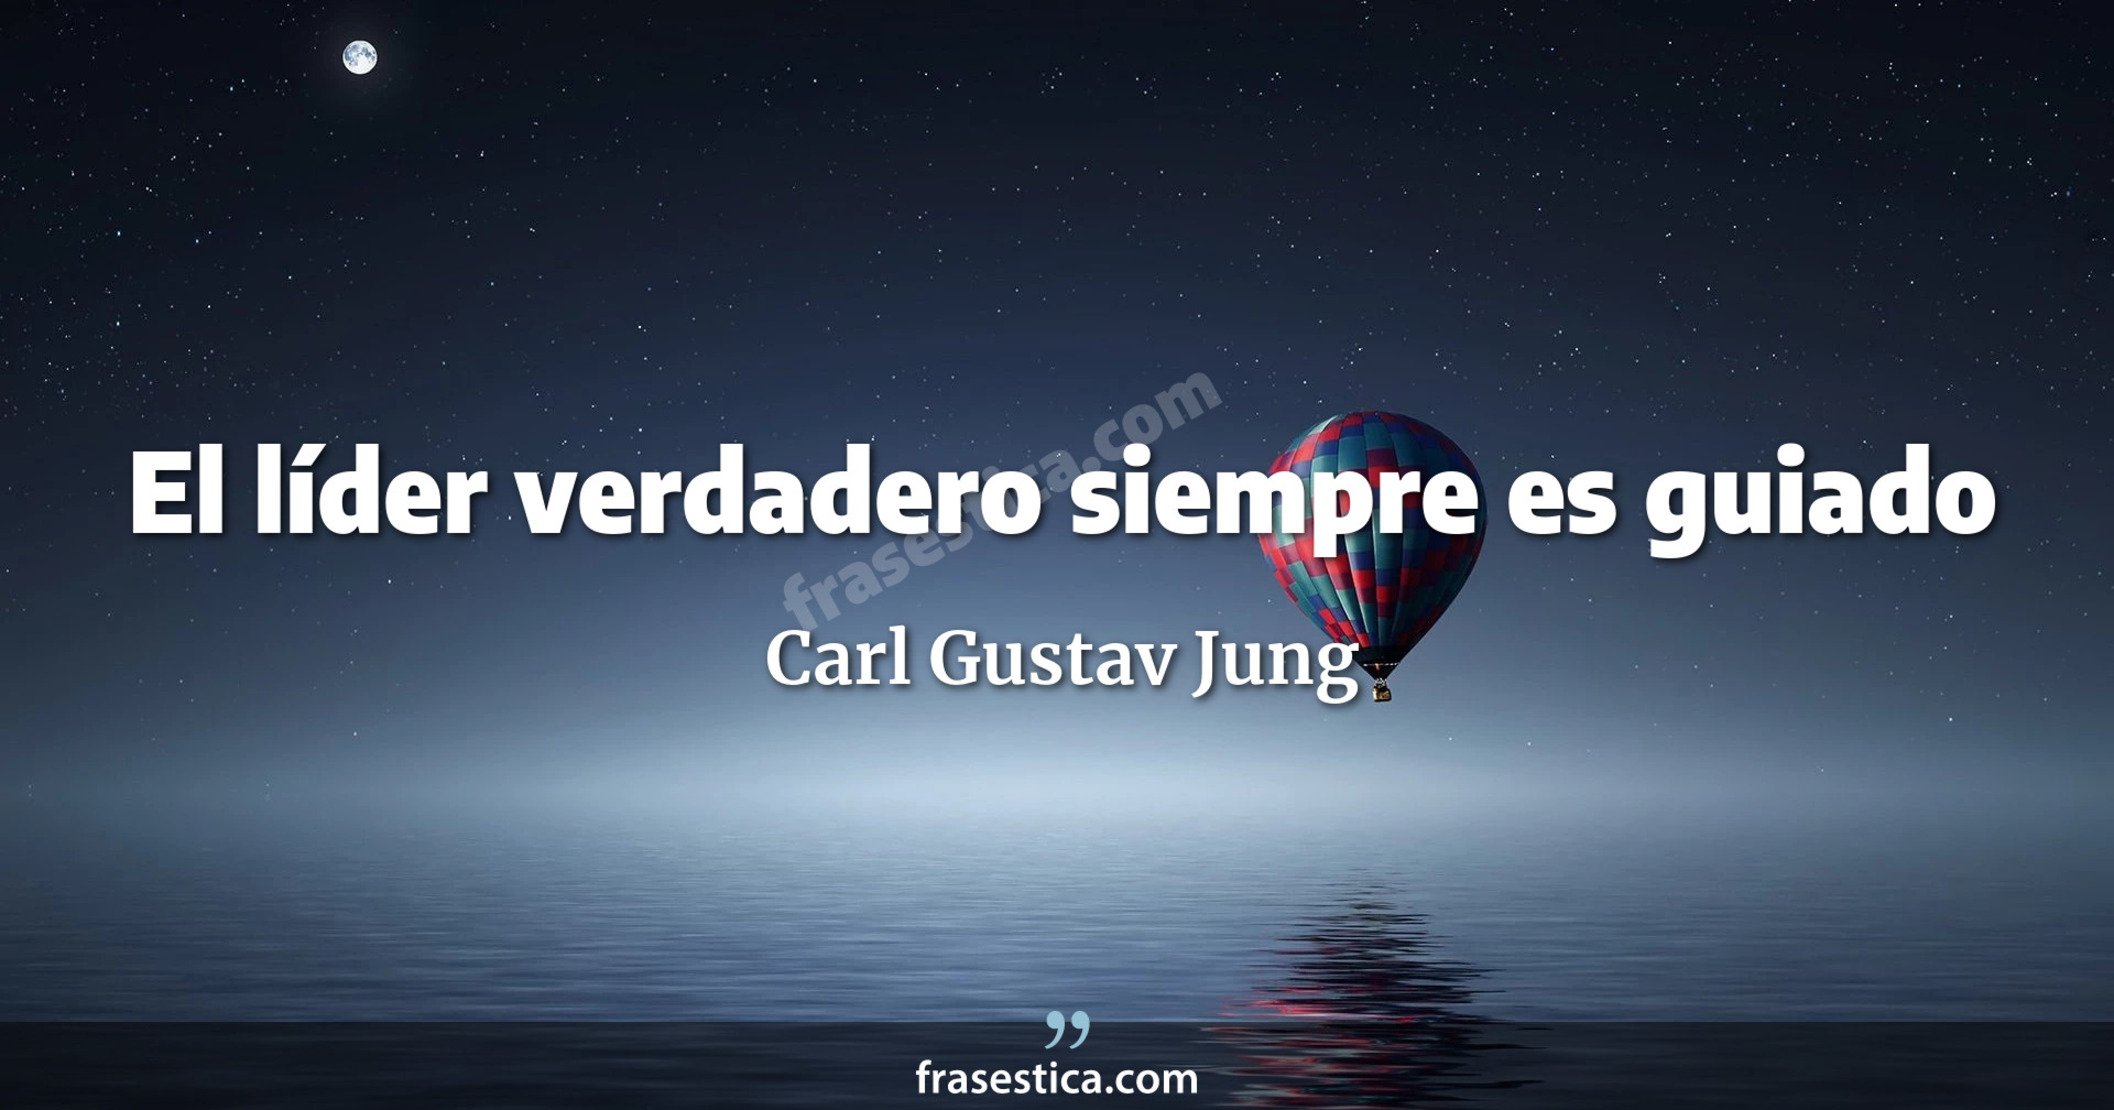 El líder verdadero siempre es guiado - Carl Gustav Jung